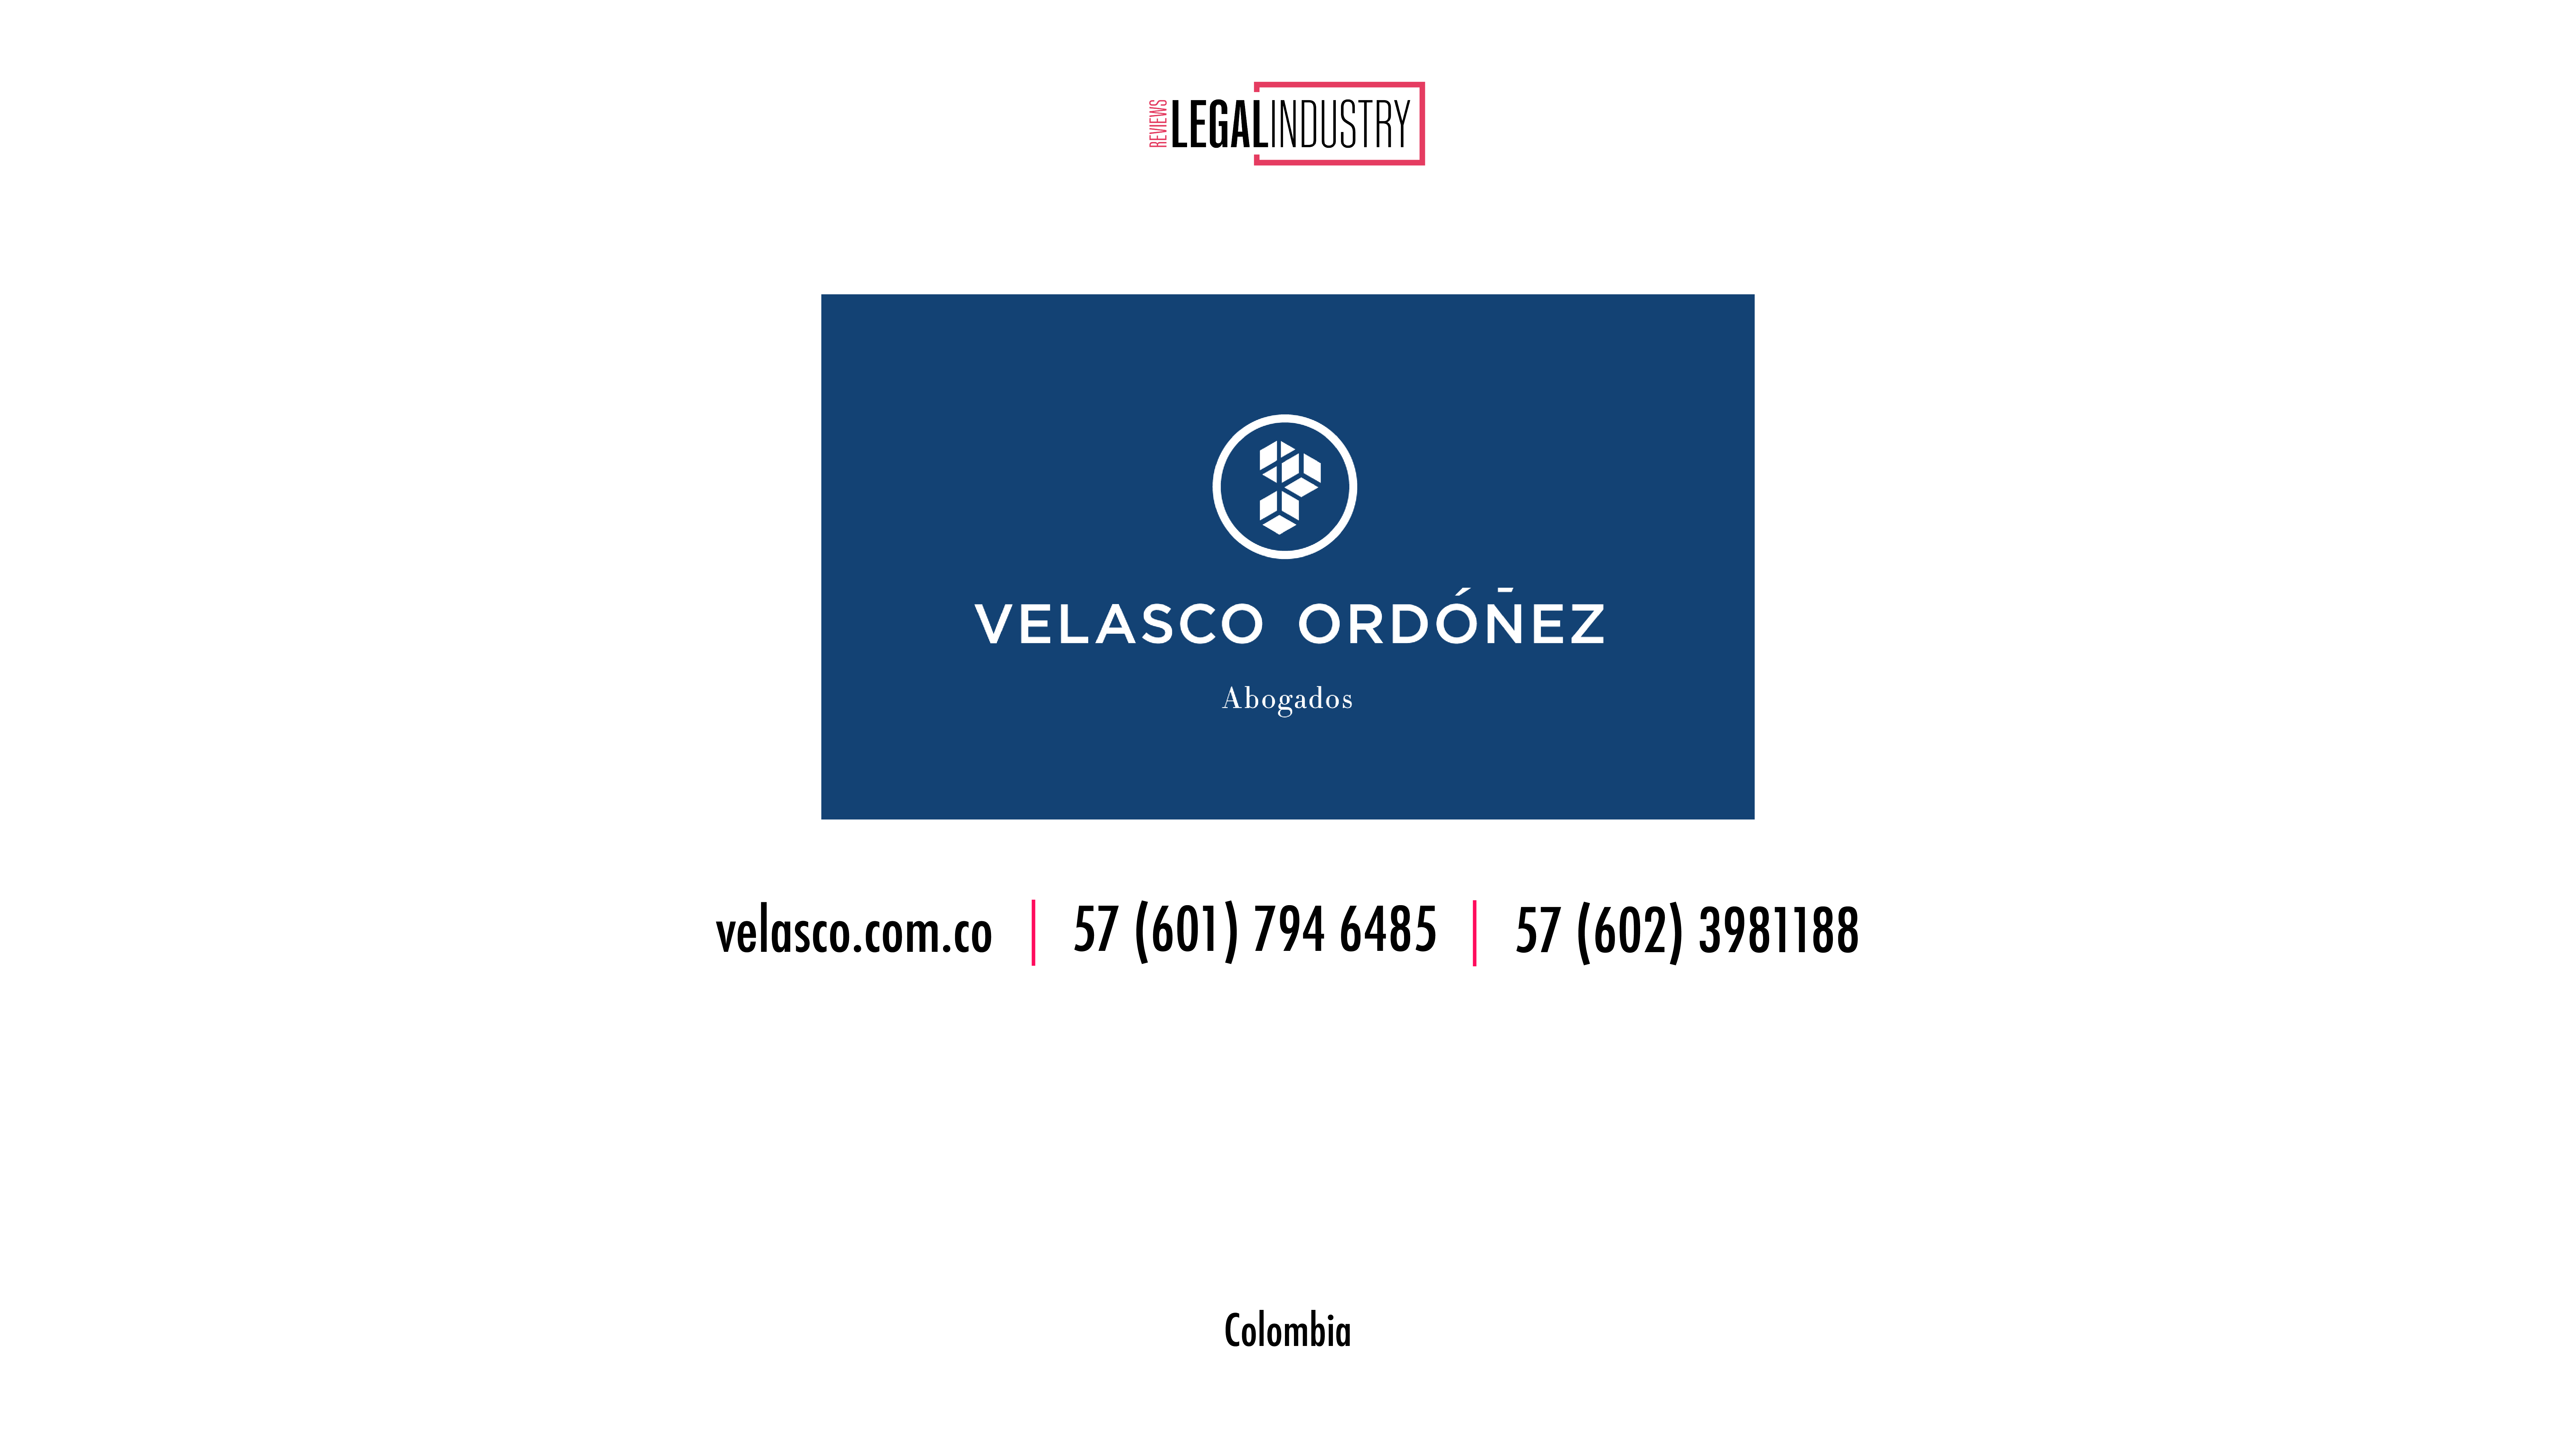 LIR Partners - Velasco Ordóñez